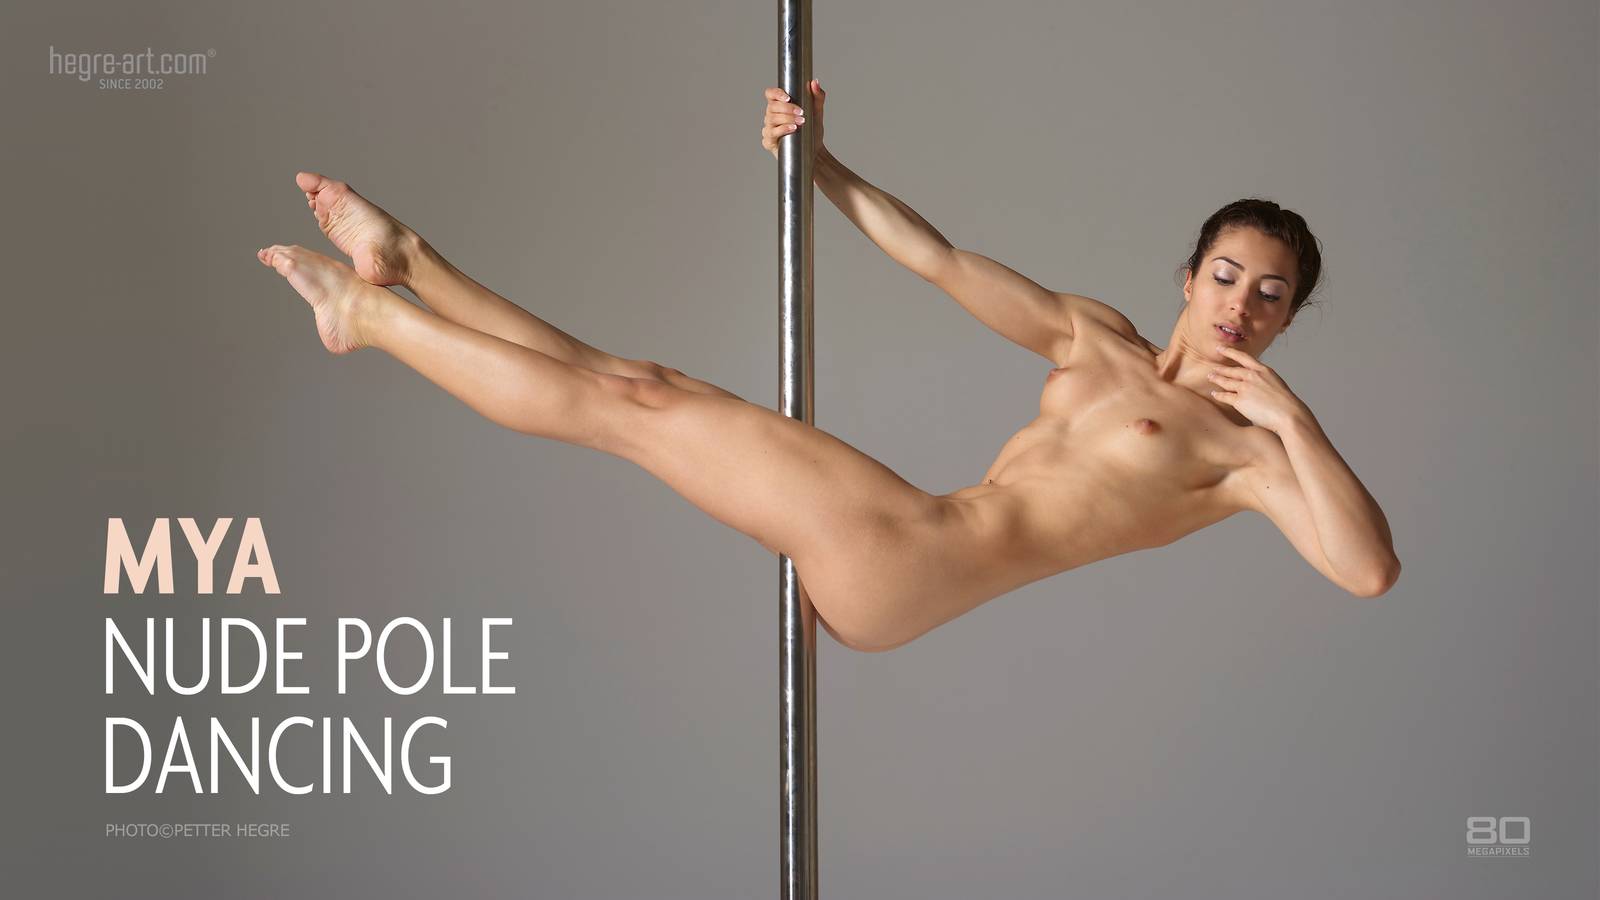 Mya nude pole dancing - Hegre.com